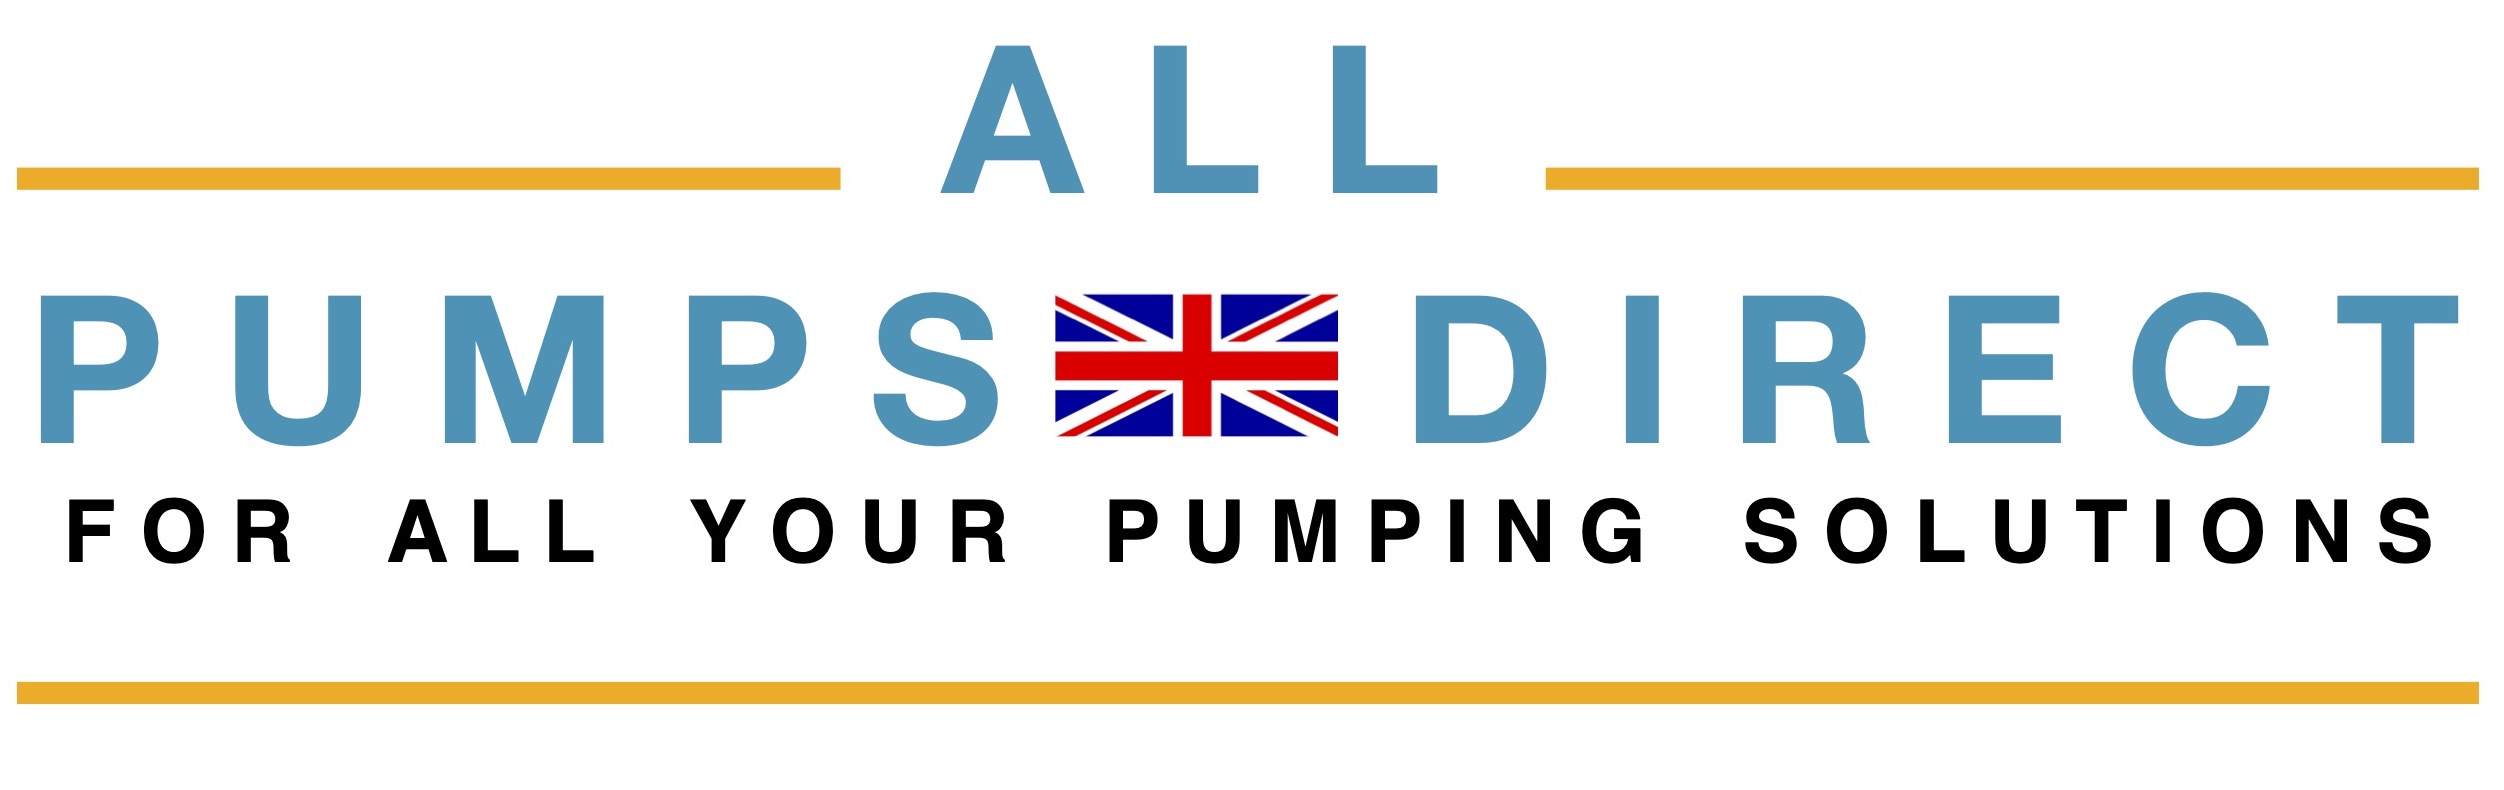 ALL PUMPS DIRECT UK's No Pump